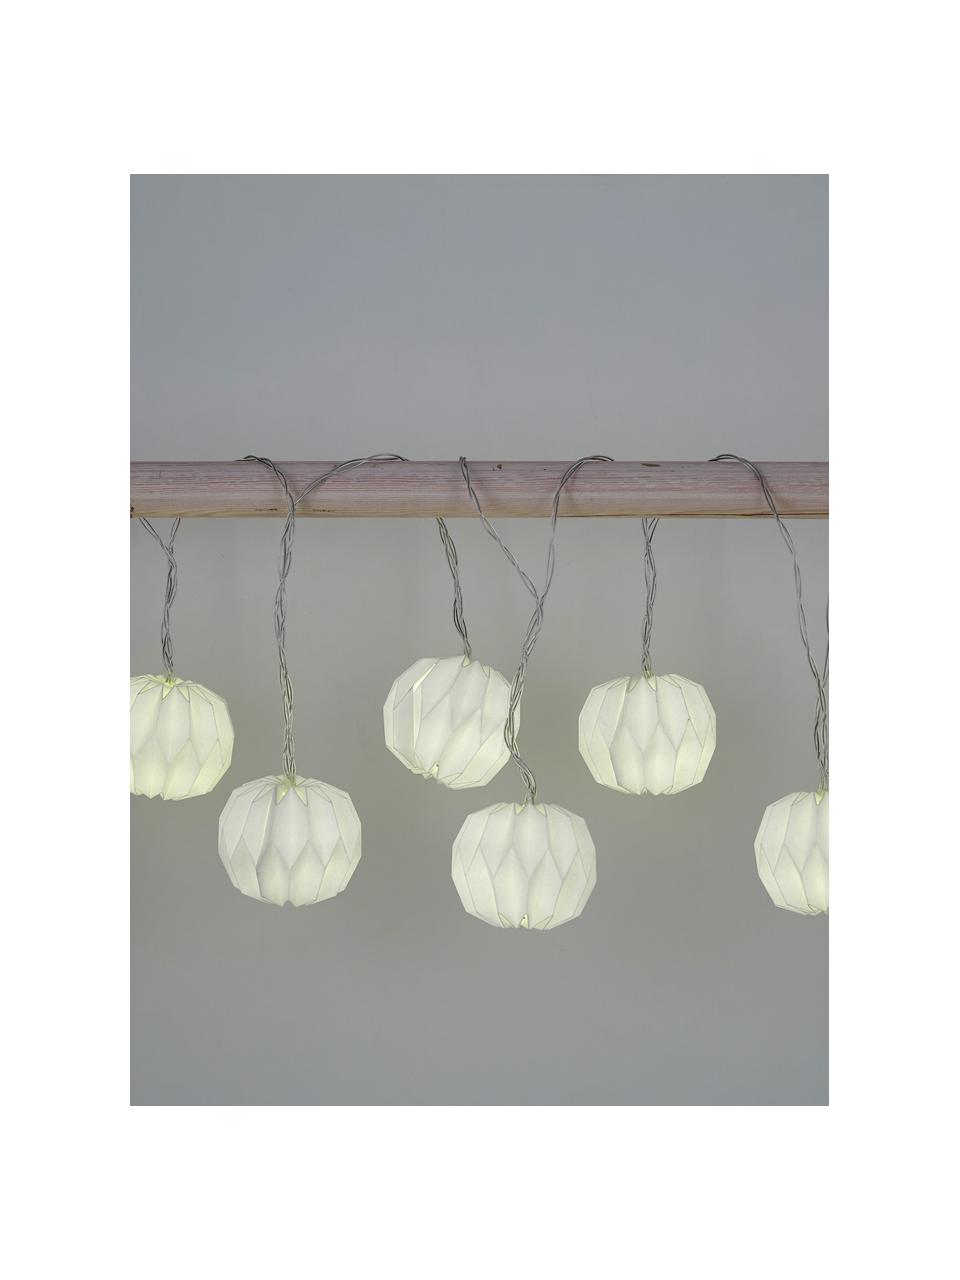 LED-Lichterkette Hanami, 259 cm, 8 Lampions, Papier, Metall, Kunststoff (PVC), Weiß, L 259 cm